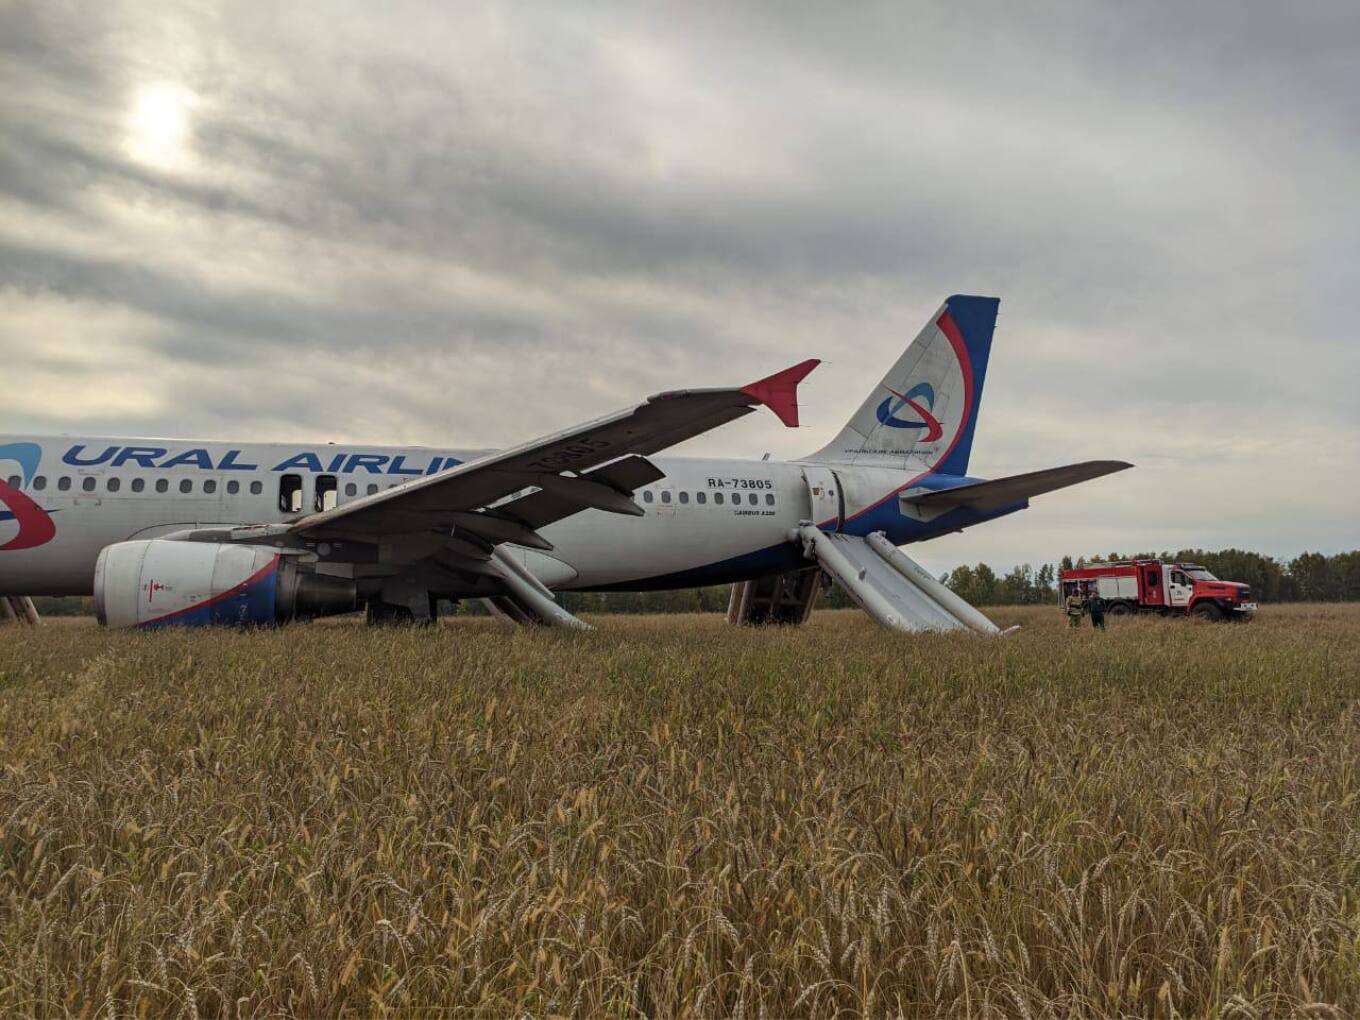 Σιβήρια: Αναγκαστική προσγείωση για αεροπλάνο της Ural Airlines με 159 επιβάτες